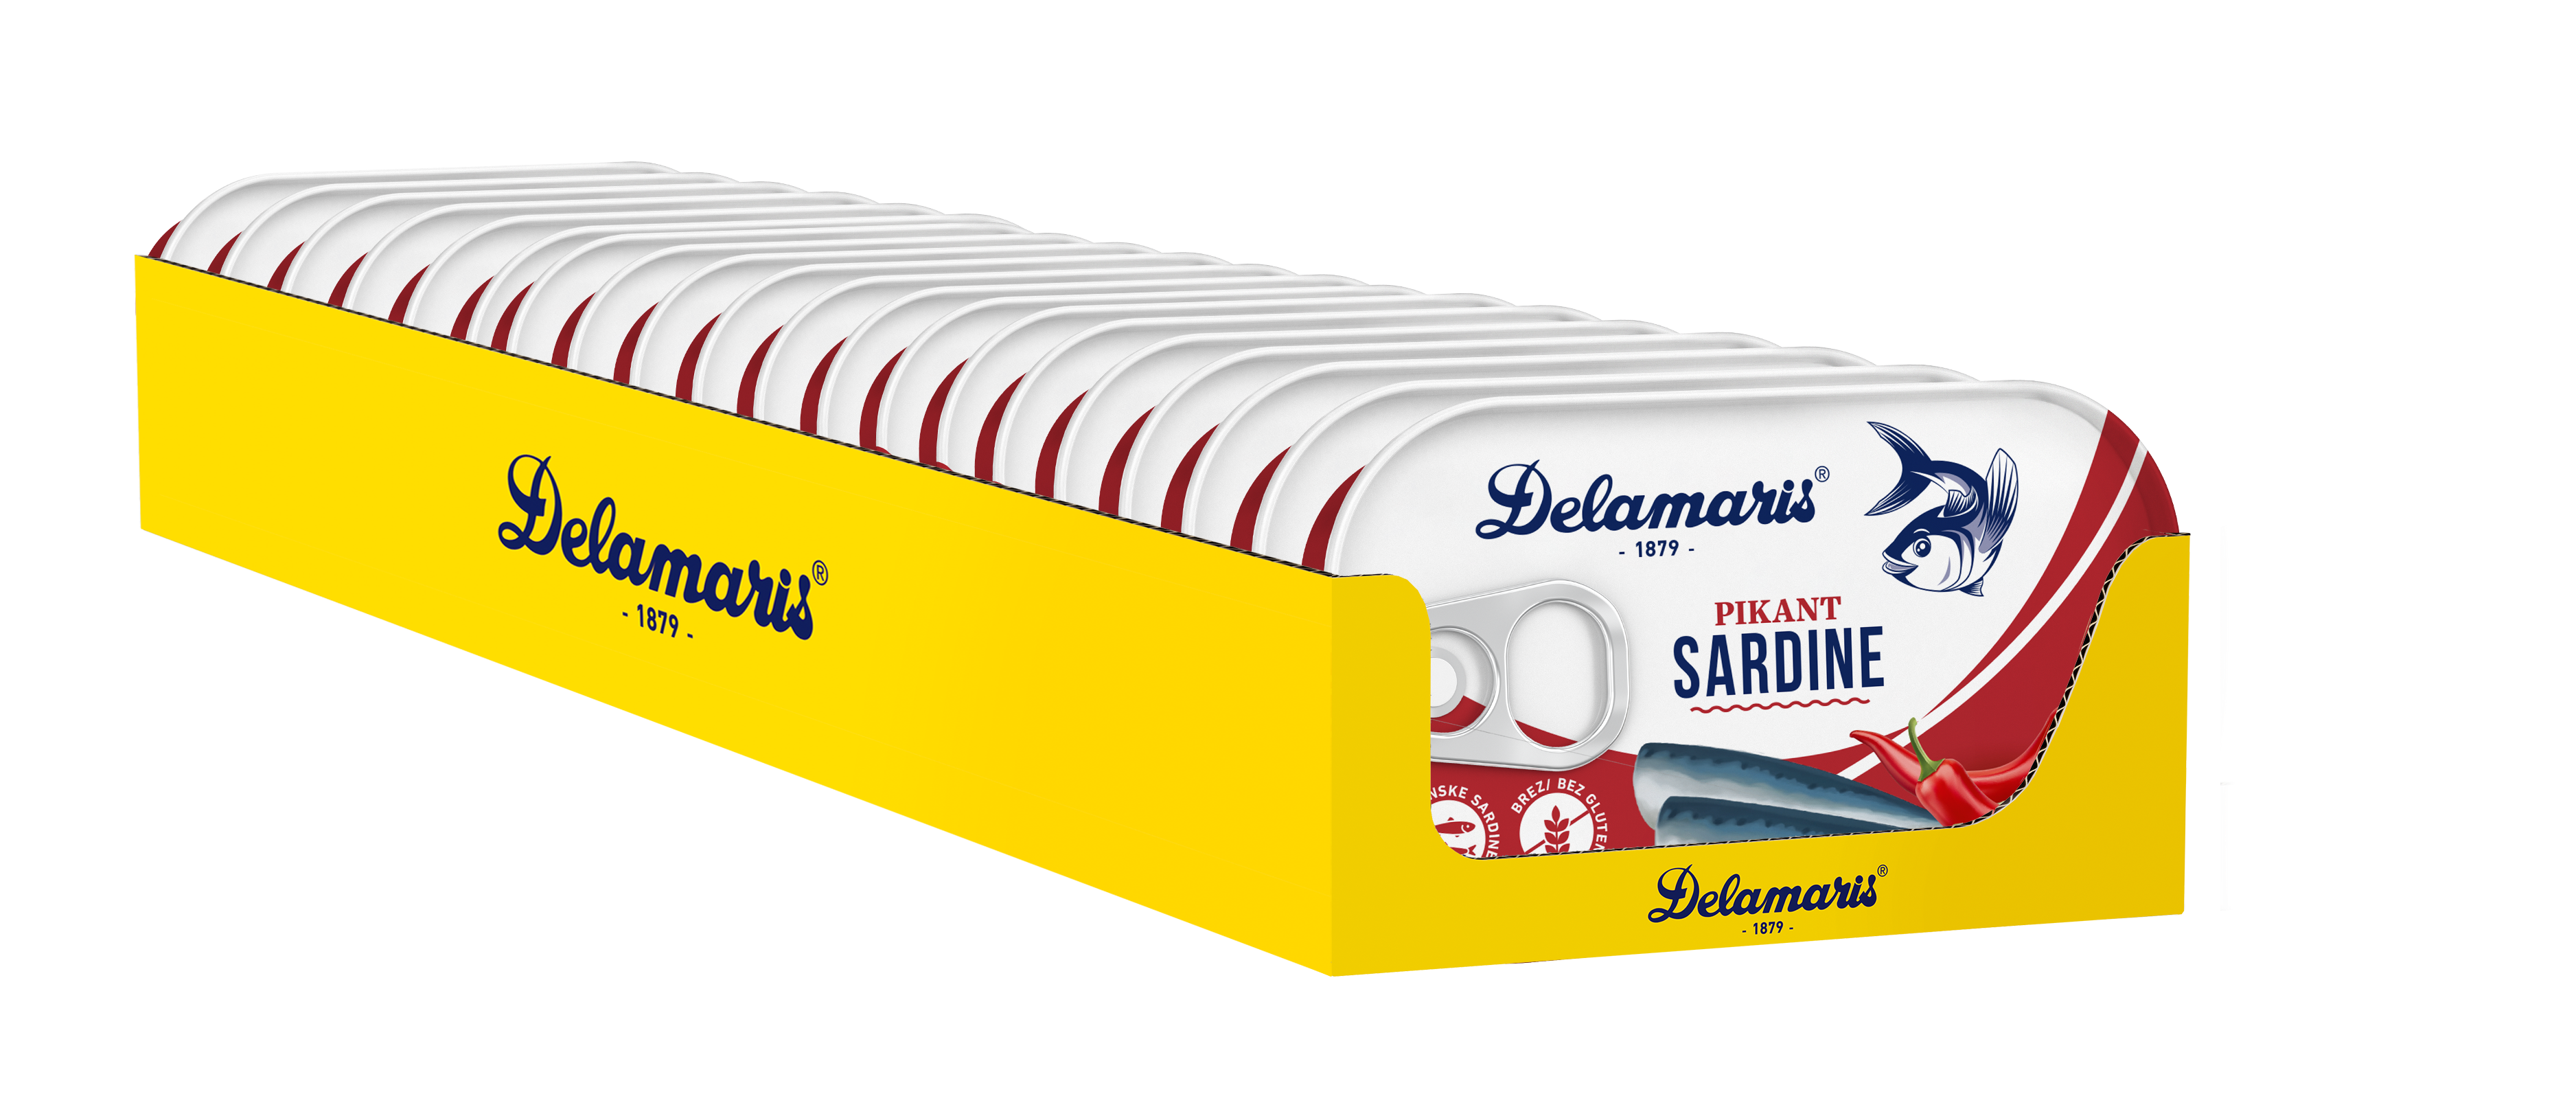 Delamaris sardine PIKANT 90g